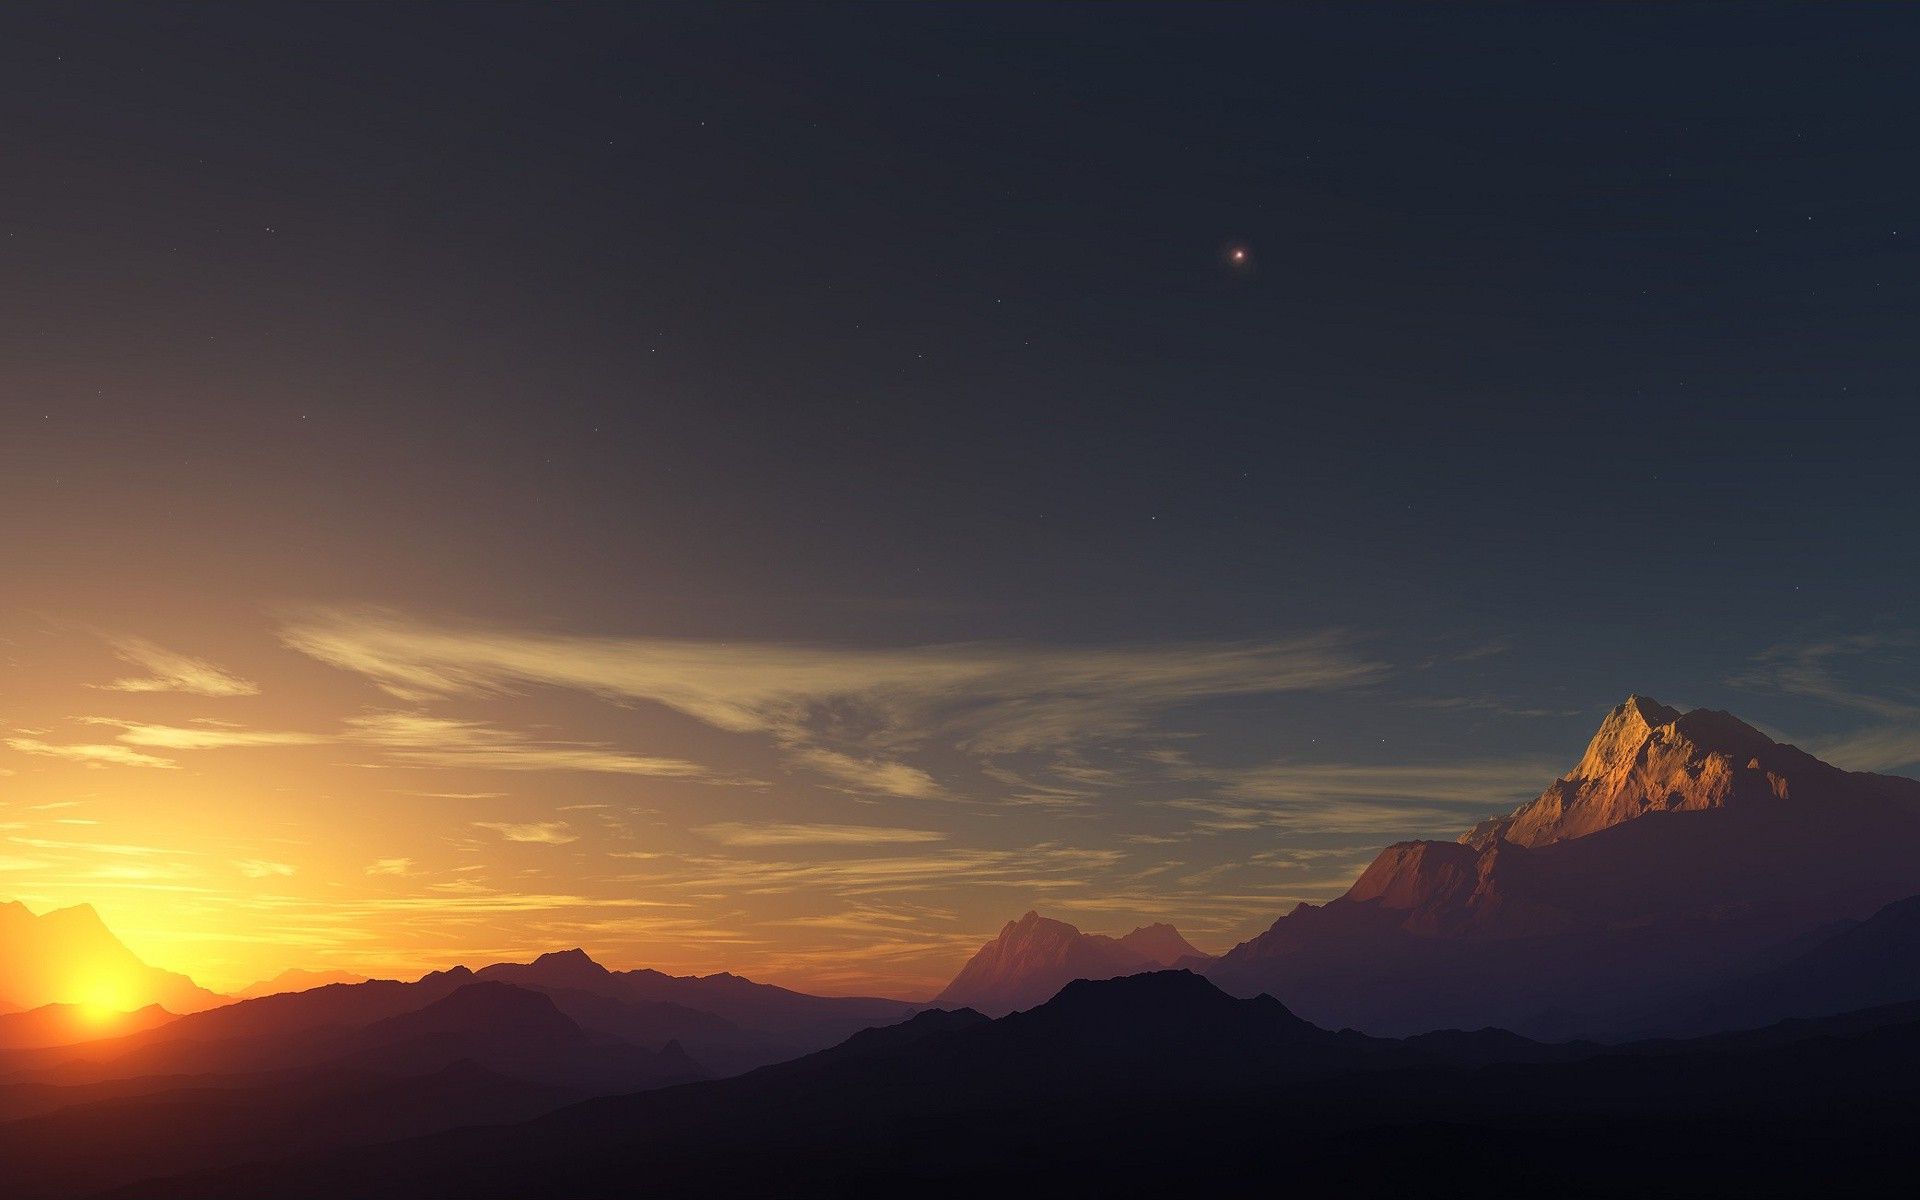 صور غروب رائعه Sunset-light-over-high-mountain-peaks-nature-hd-wallpaper-1920x1200-9104